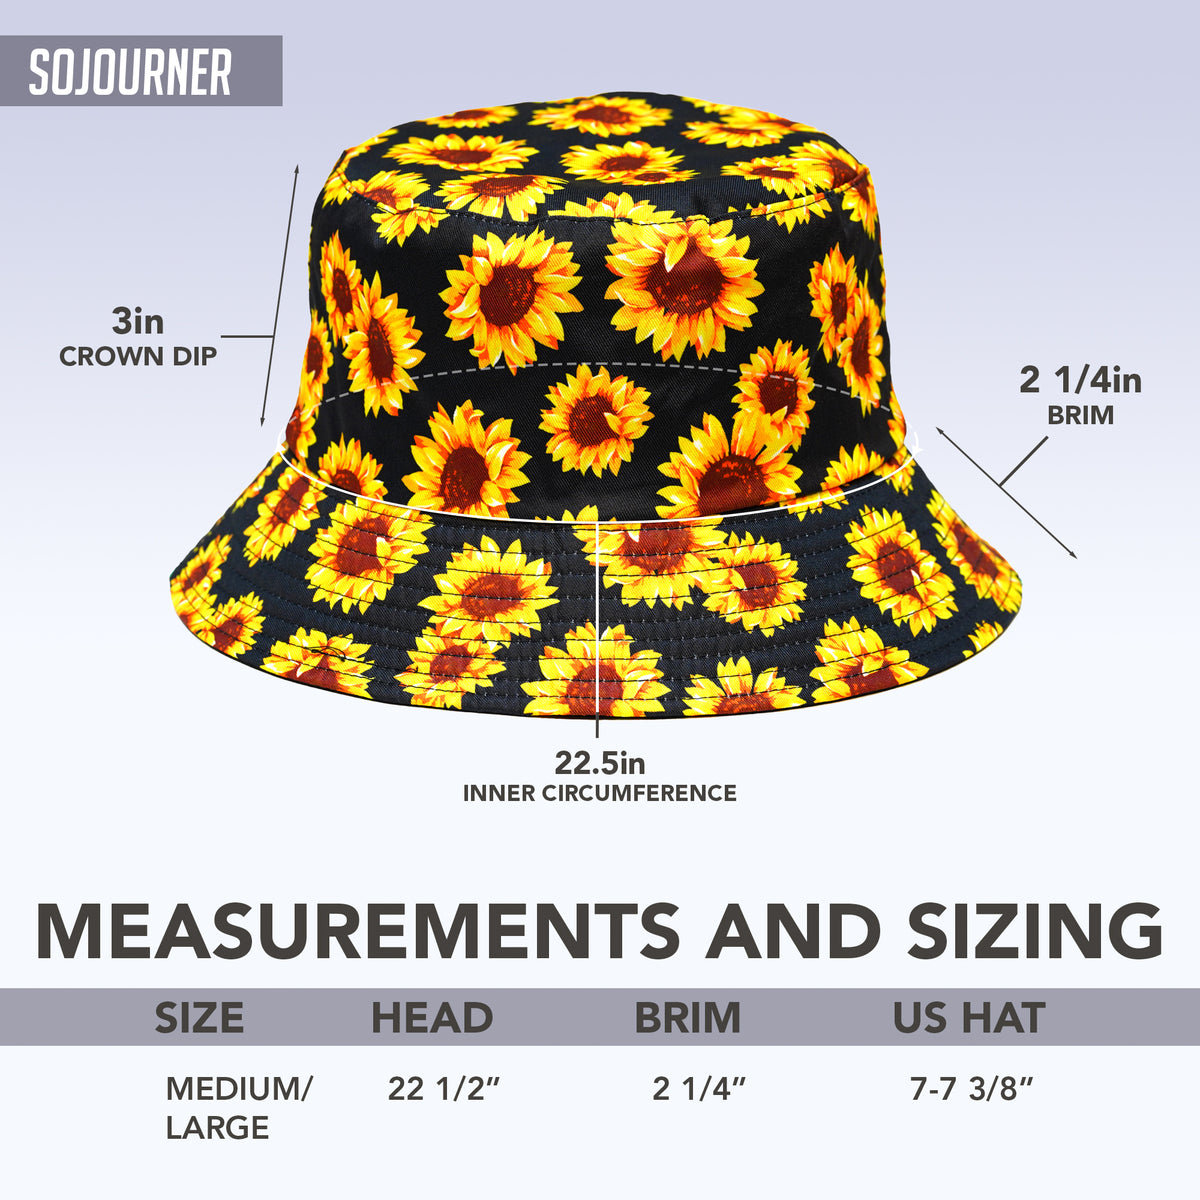 Rave Bucket Hat for Women & Men - Sunflower